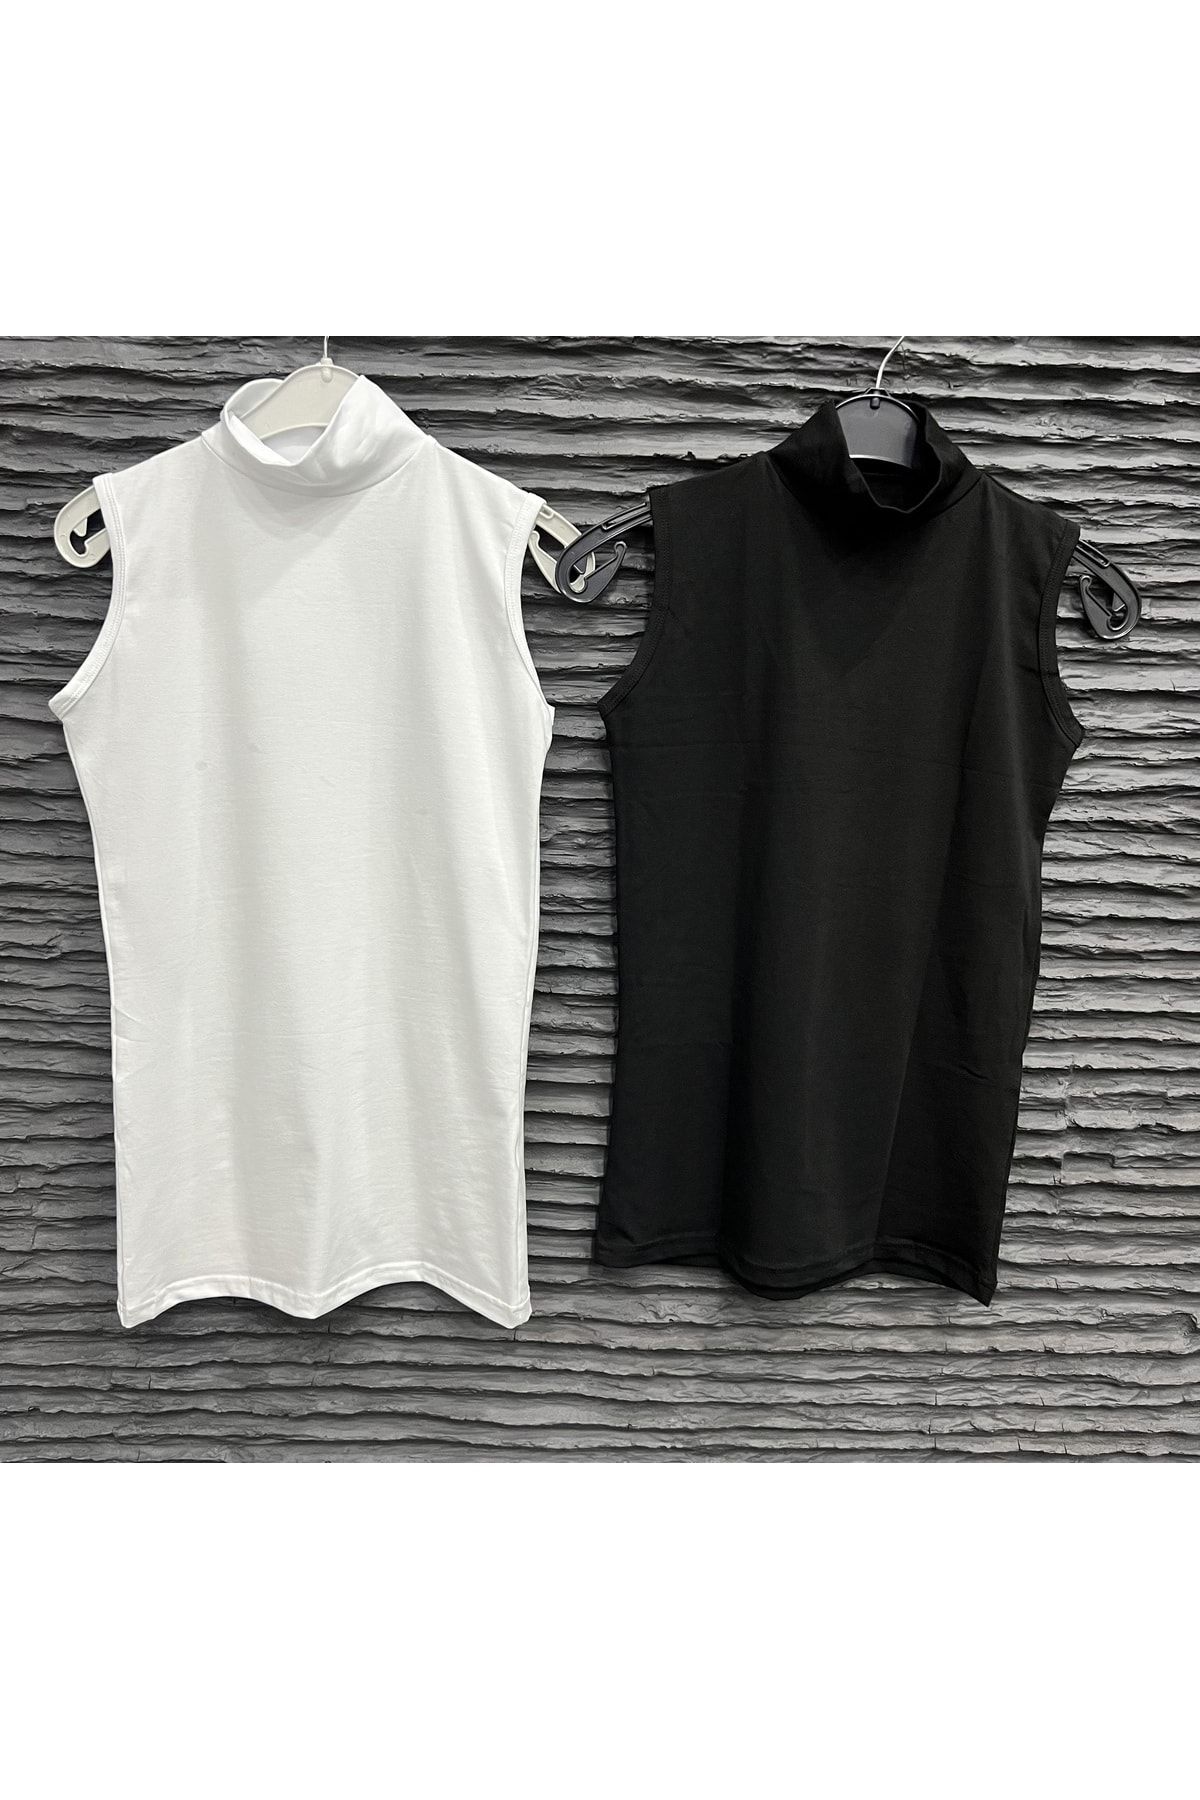 Akhua Sıfır Kol Kadın T-shirt Pamuklu Likralı (2 ADET) Siyah Ve Beyaz Iç Göstermeyen